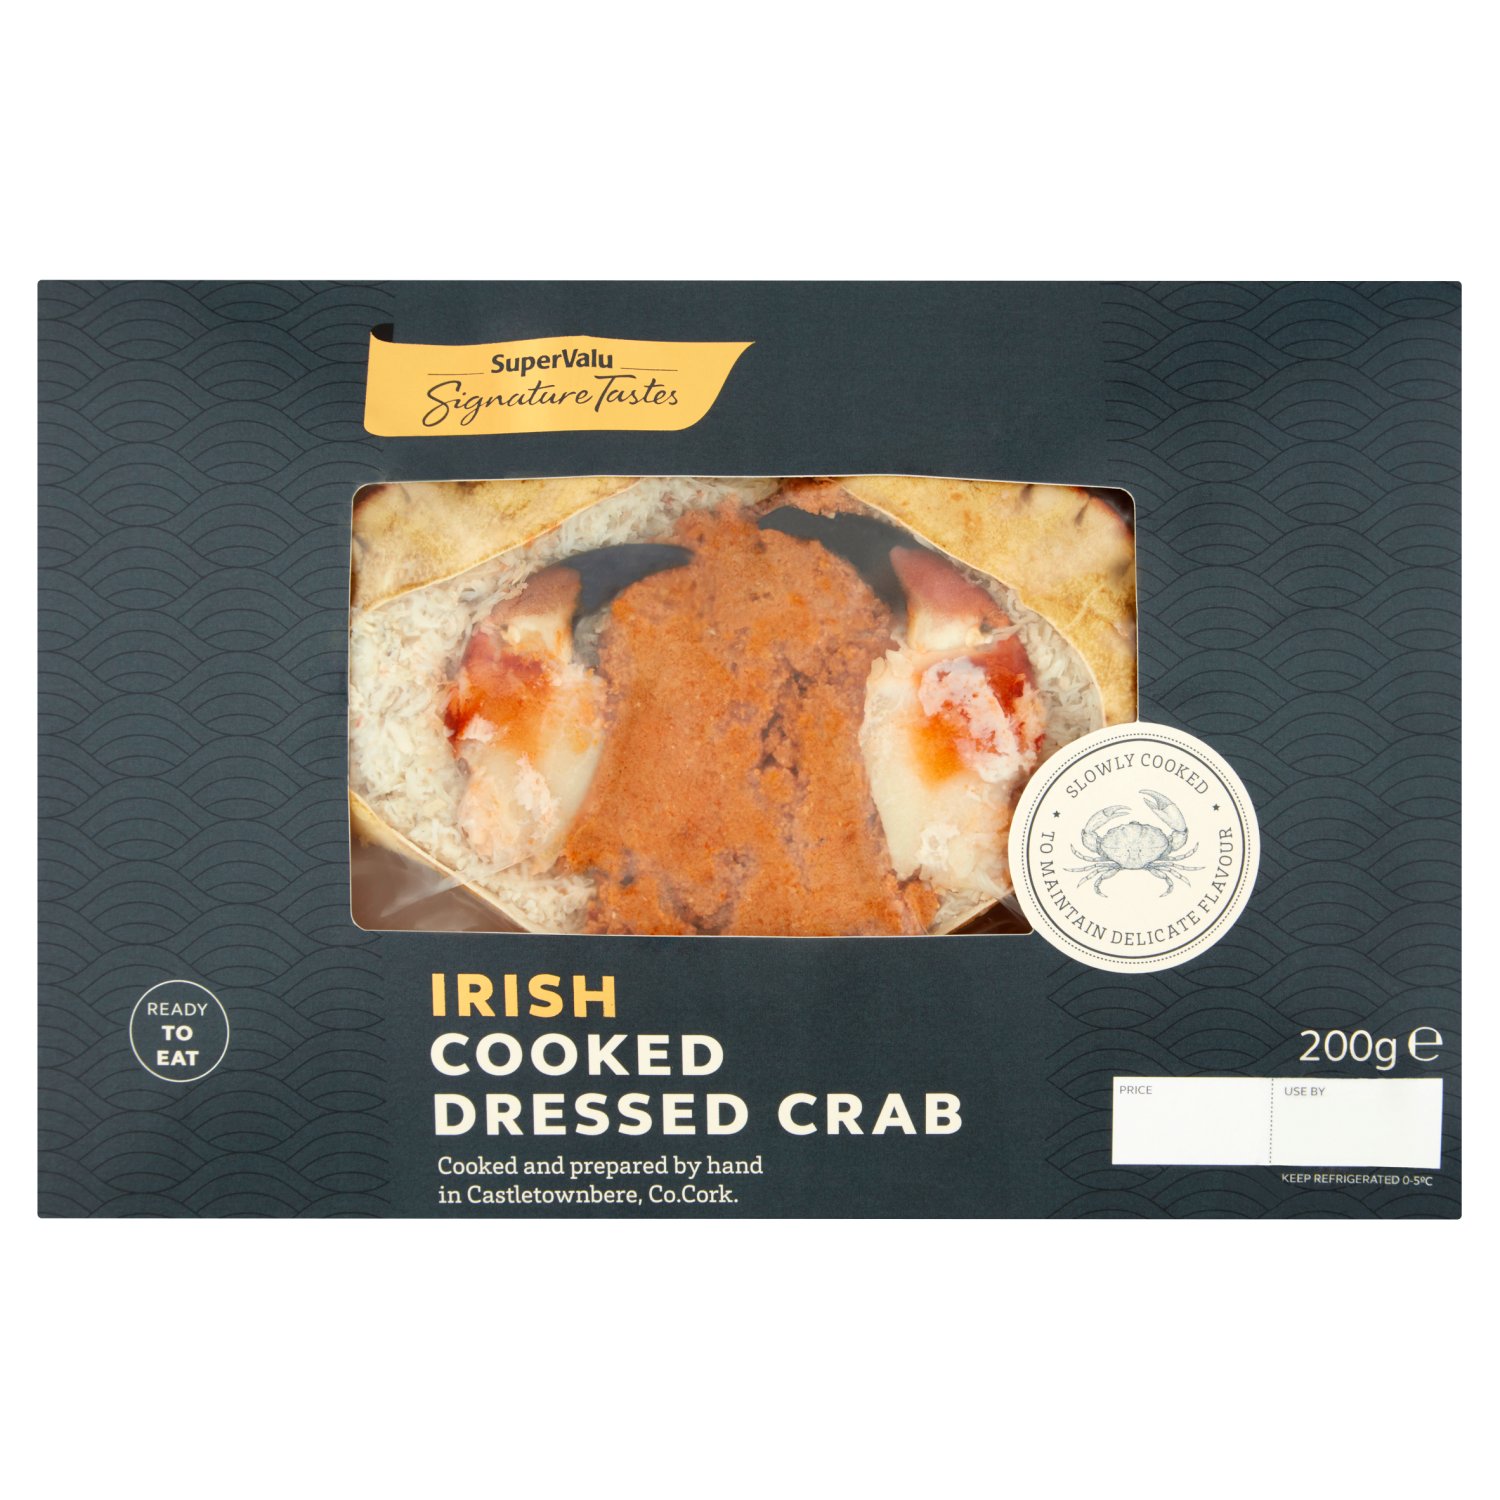 Signature Tastes Irish Cooked Dressed Crab (200 g)